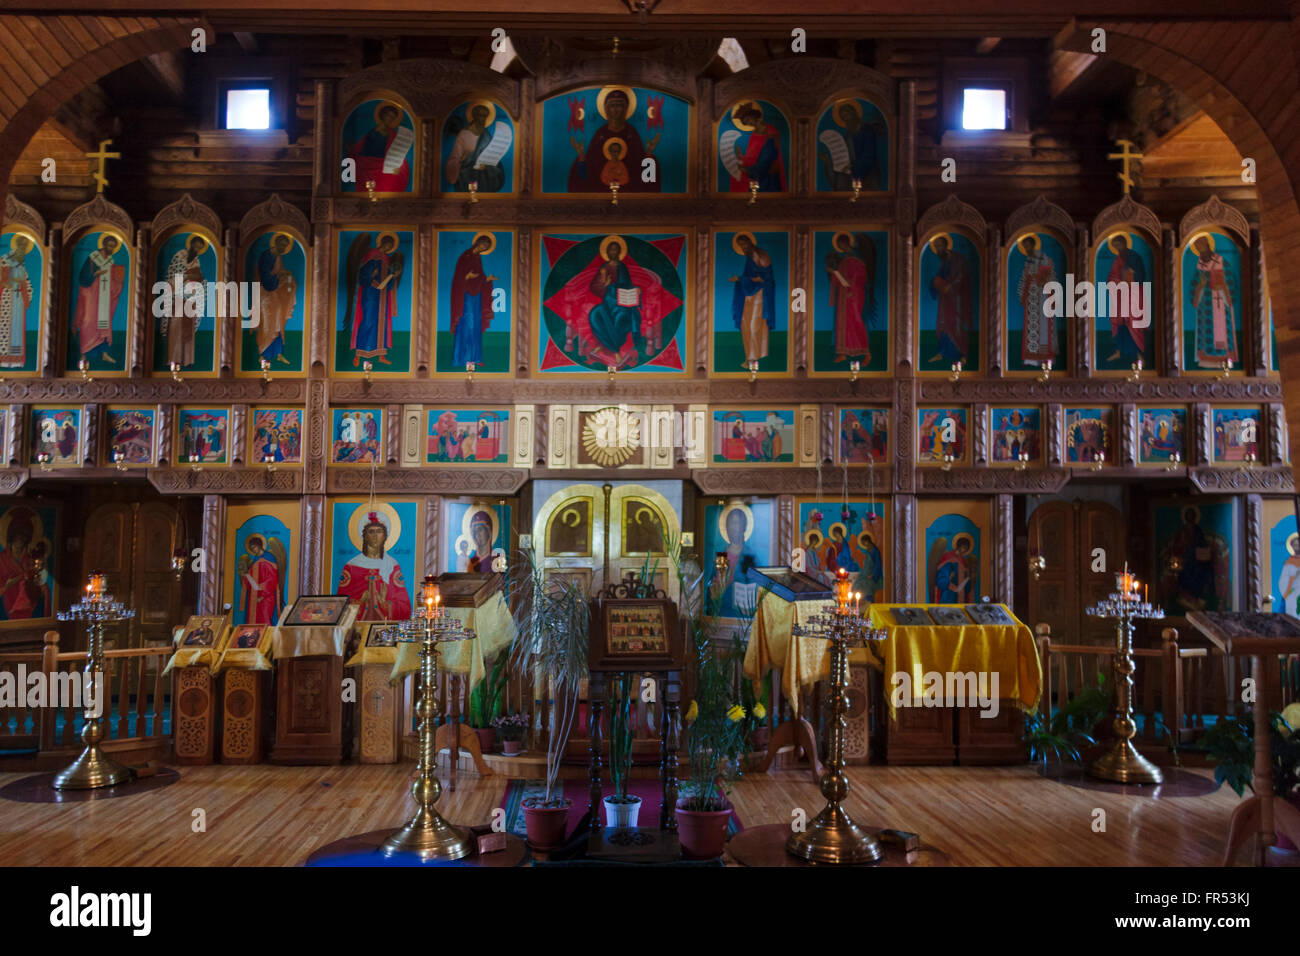 All'interno della Chiesa Ortodossa, la più grande struttura di legno in estremo oriente russo, Anadyr, Chukotka Okrug autonomo, Russia Foto Stock